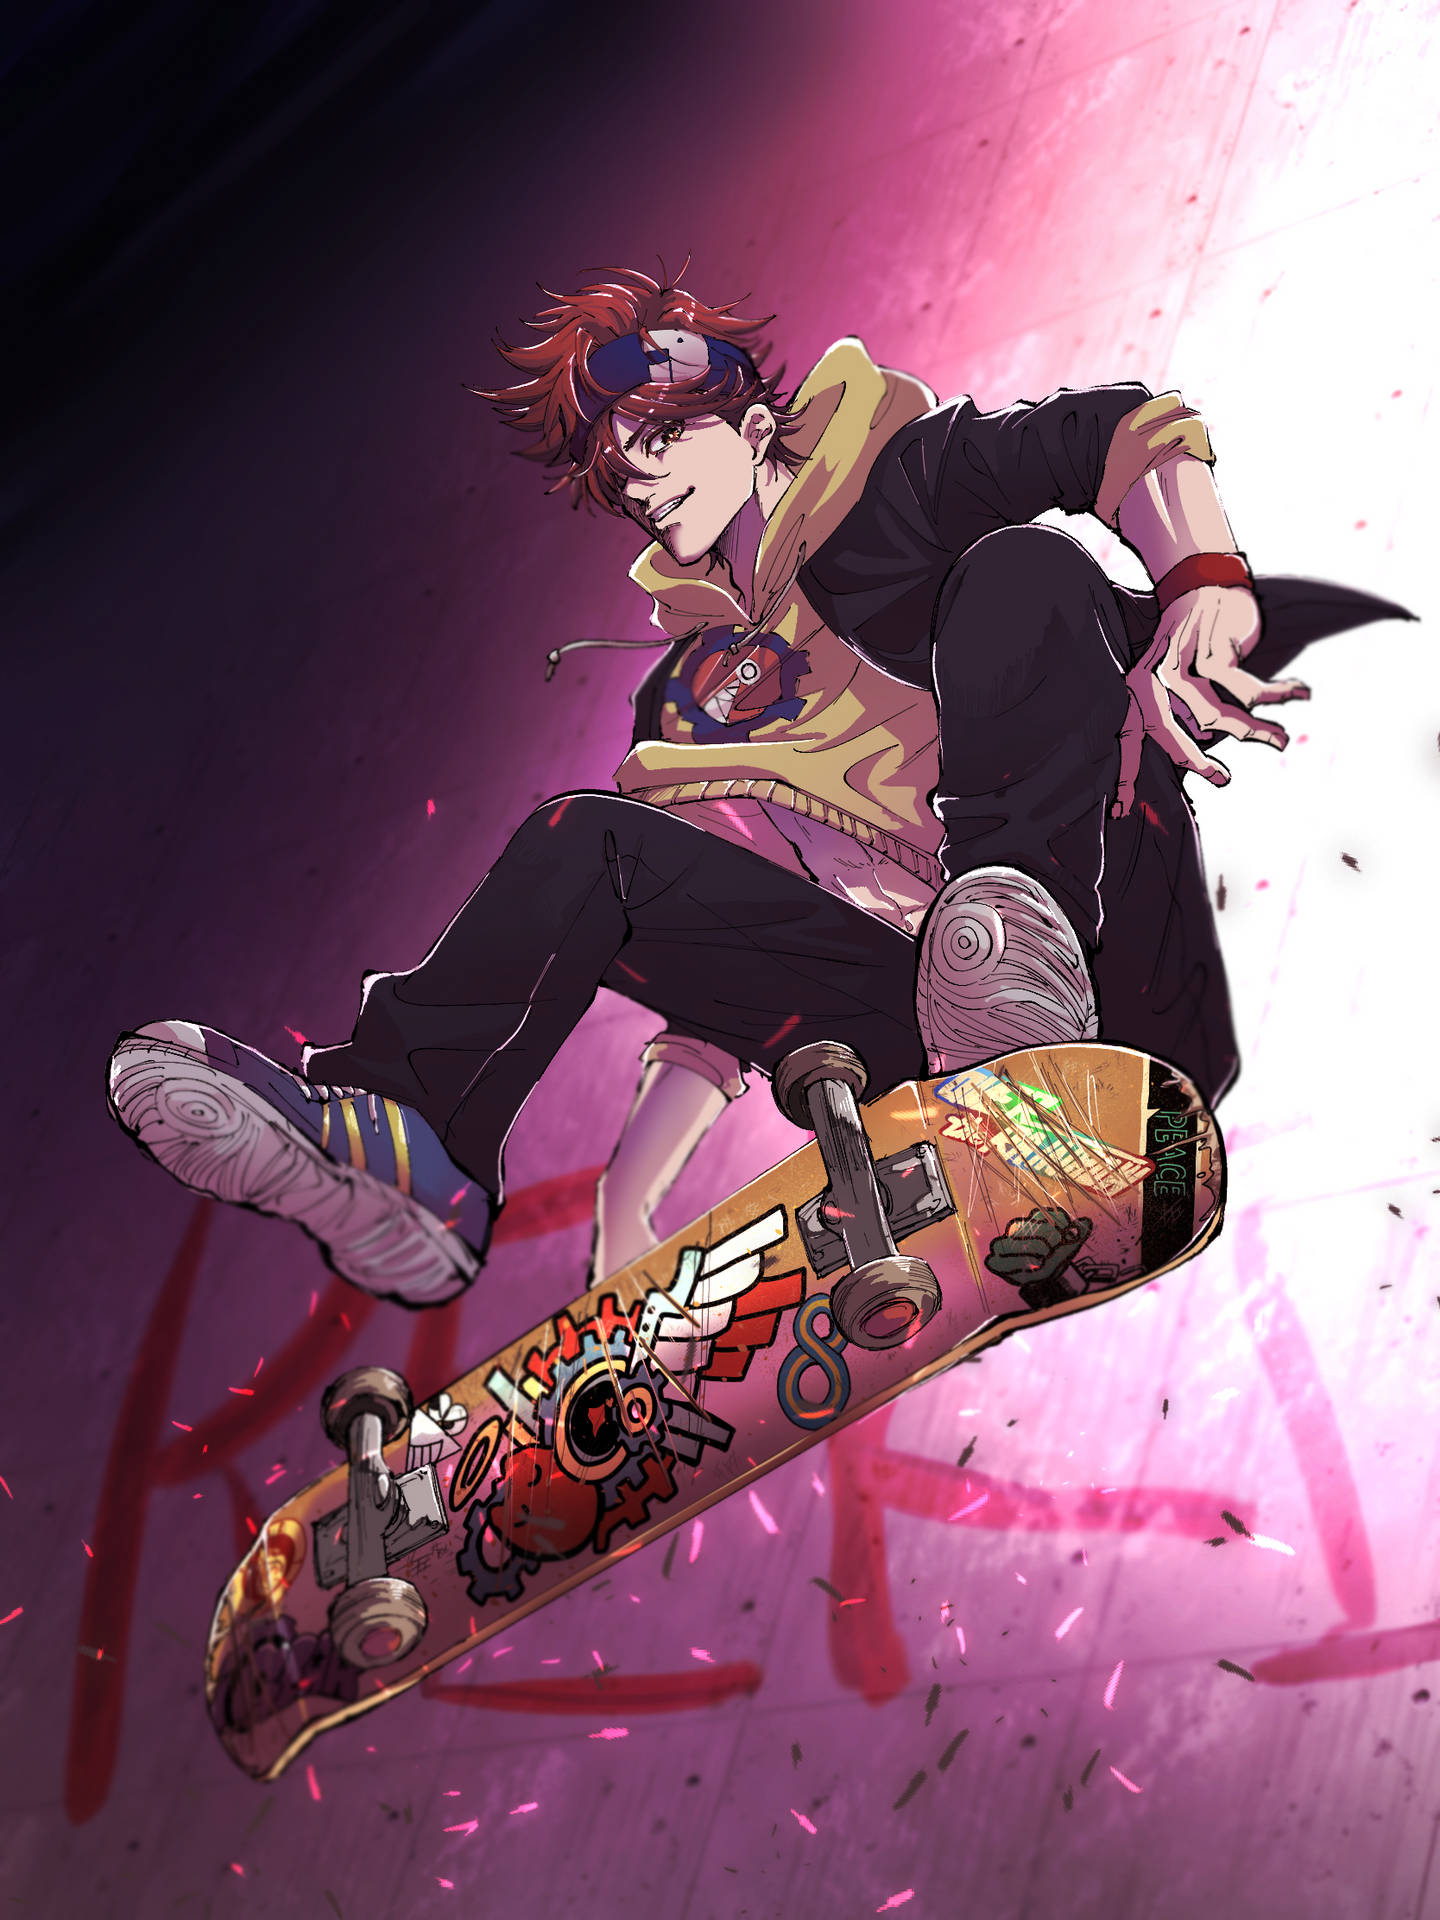 Aesthetic Anime Skater Boy Wallpaper